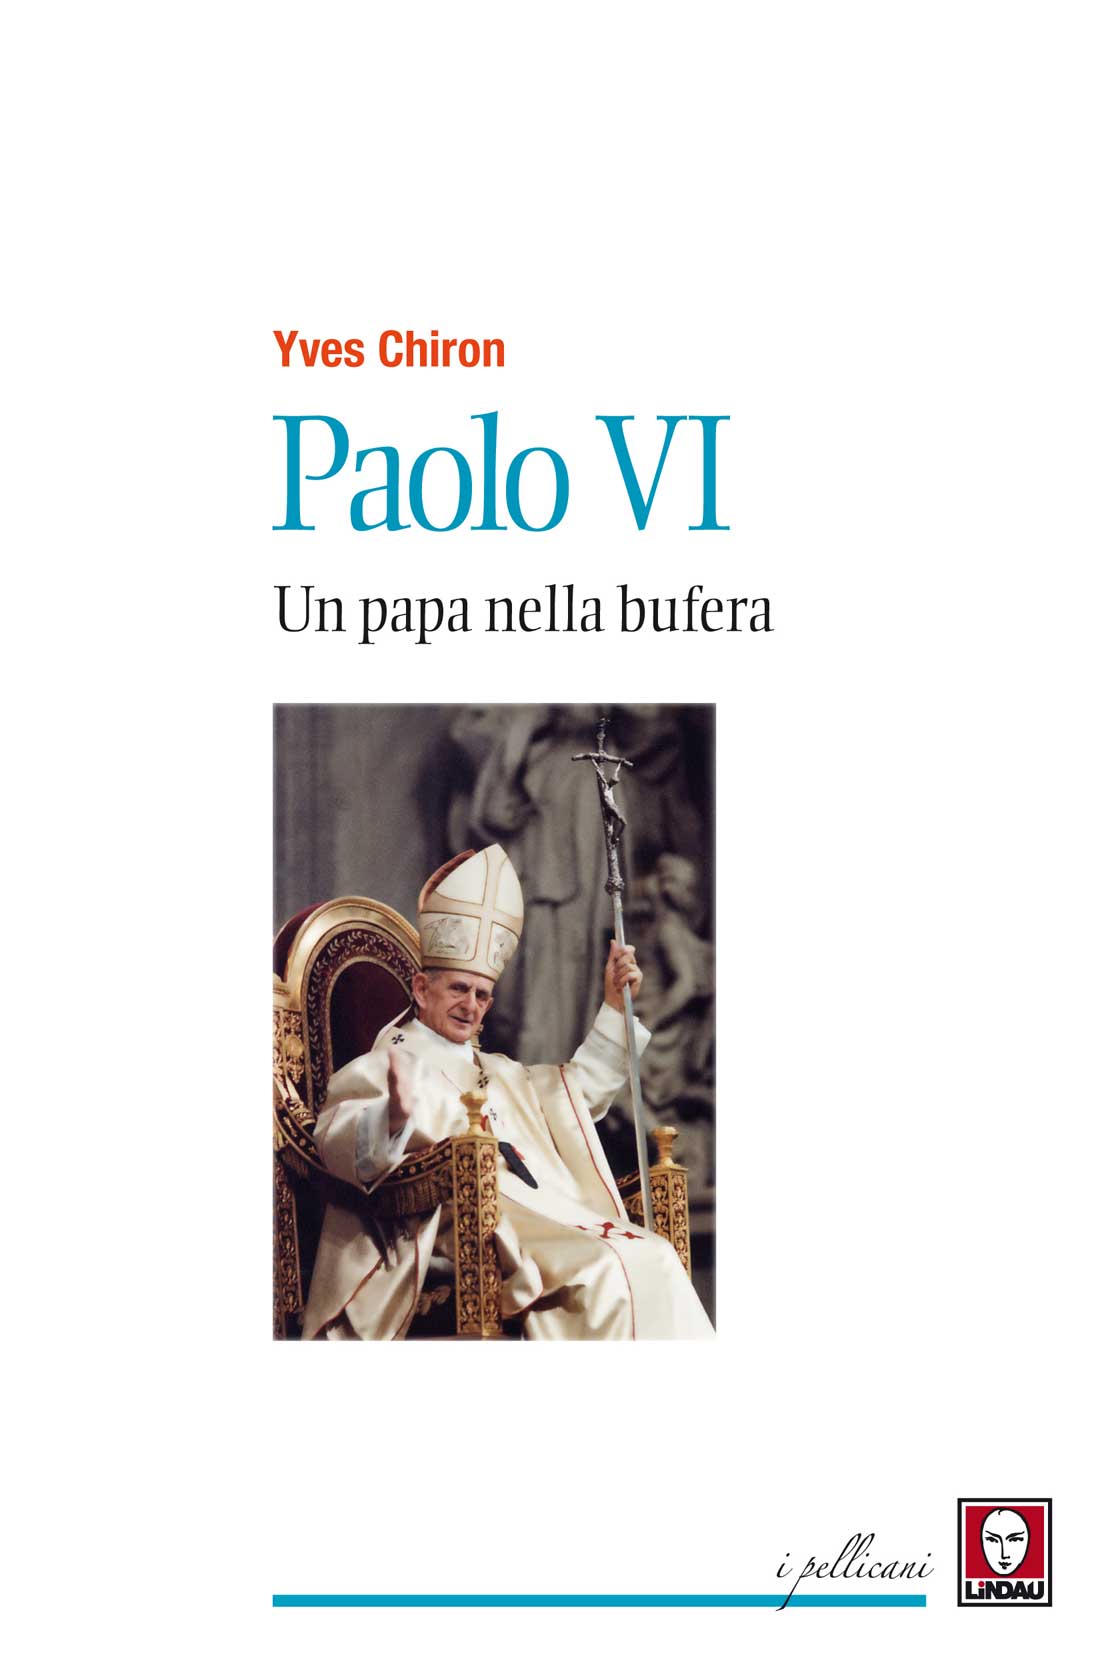 Libri Yves Chiron - Paolo VI. Un Papa Nella Bufera NUOVO SIGILLATO, EDIZIONE DEL 27/10/2016 SUBITO DISPONIBILE